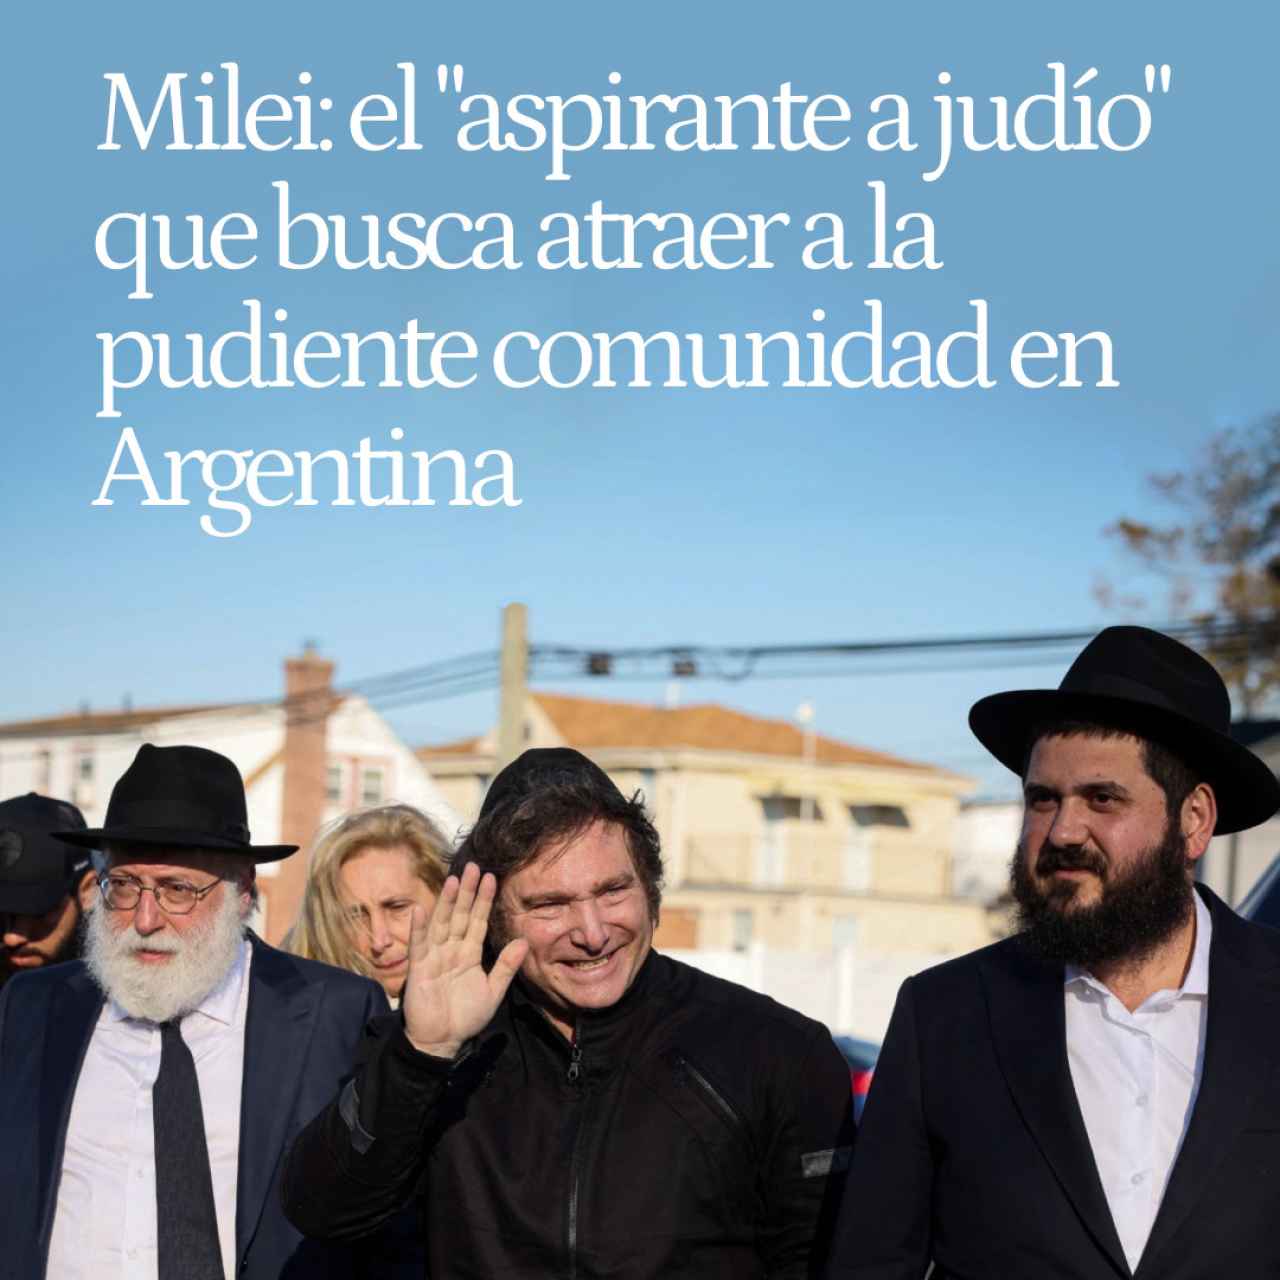 El viaje espiritual de Milei: el "aspirante a judío" que busca atraer a la pudiente comunidad en Argentina